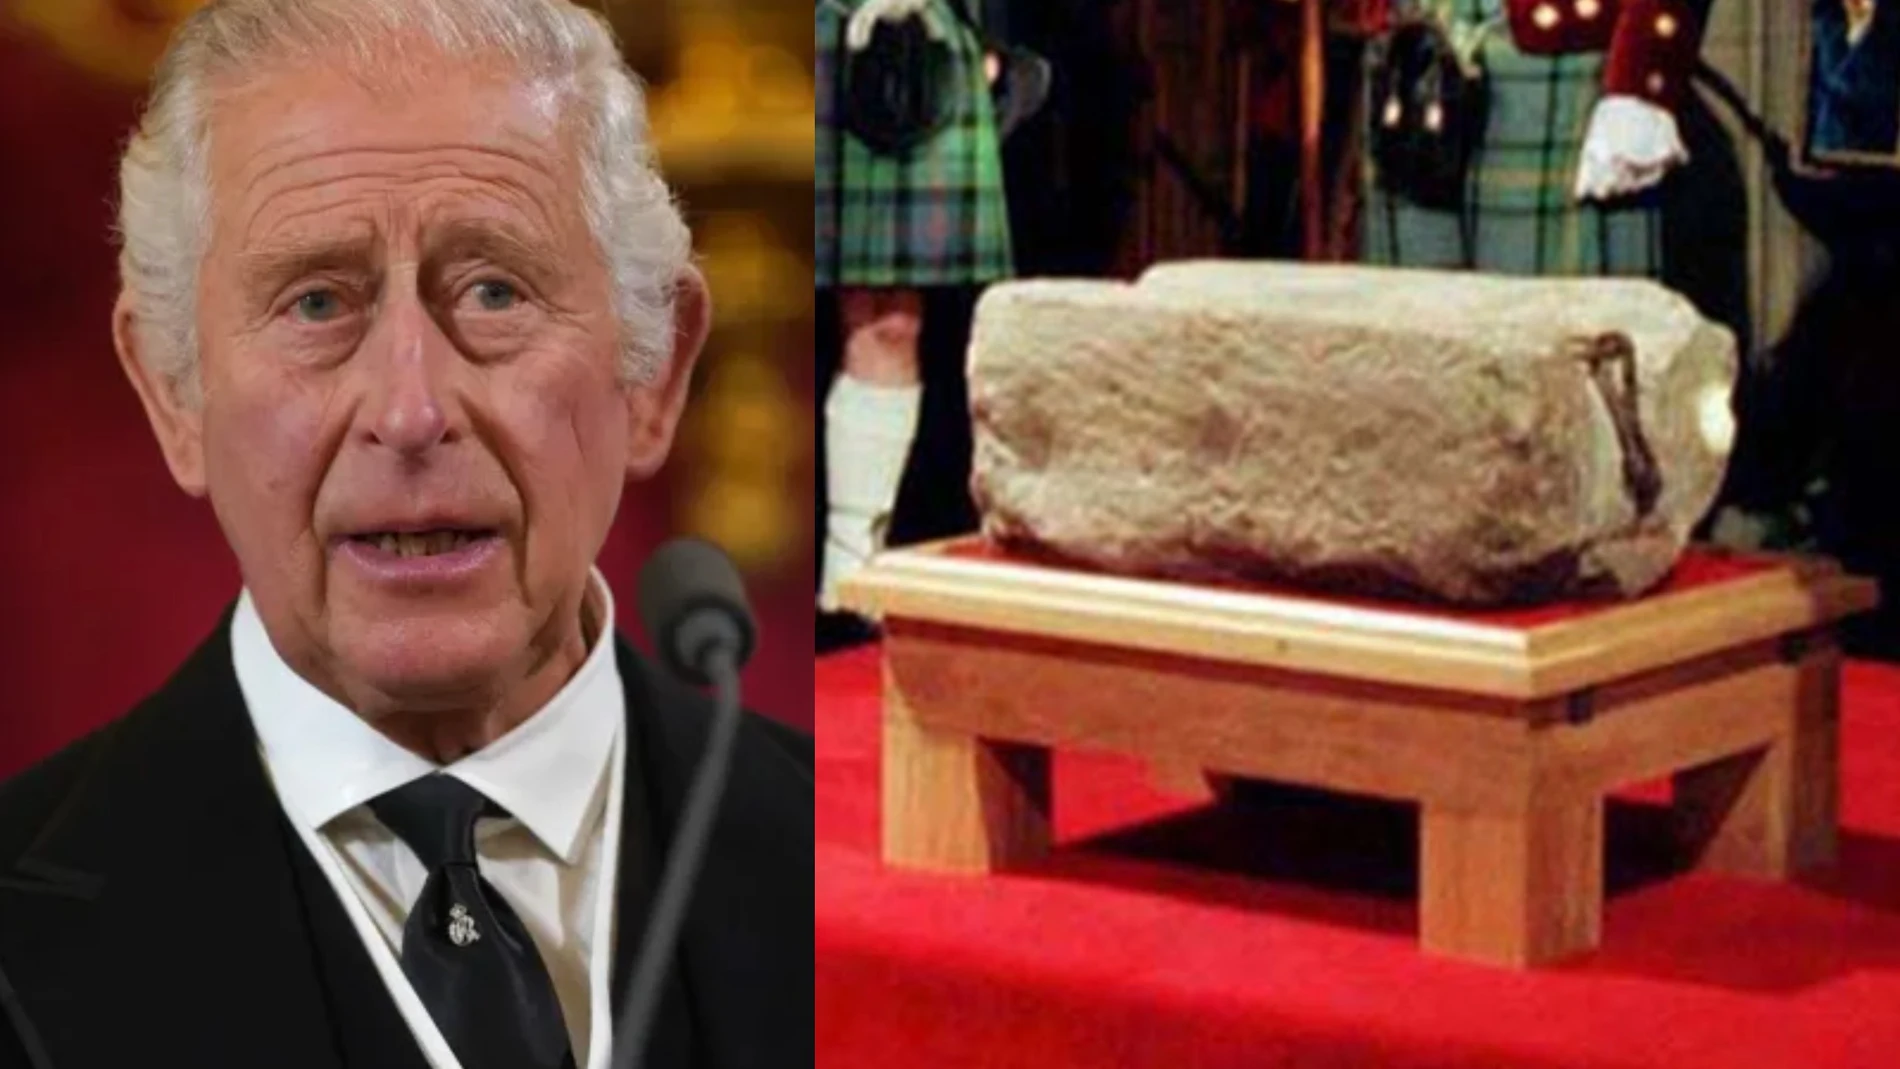 Para la coronación del rey Carlos III, la piedra será trasladada nuevamente a la abadía de Westminster, pero regresará a Escocia al terminar la ceremonia